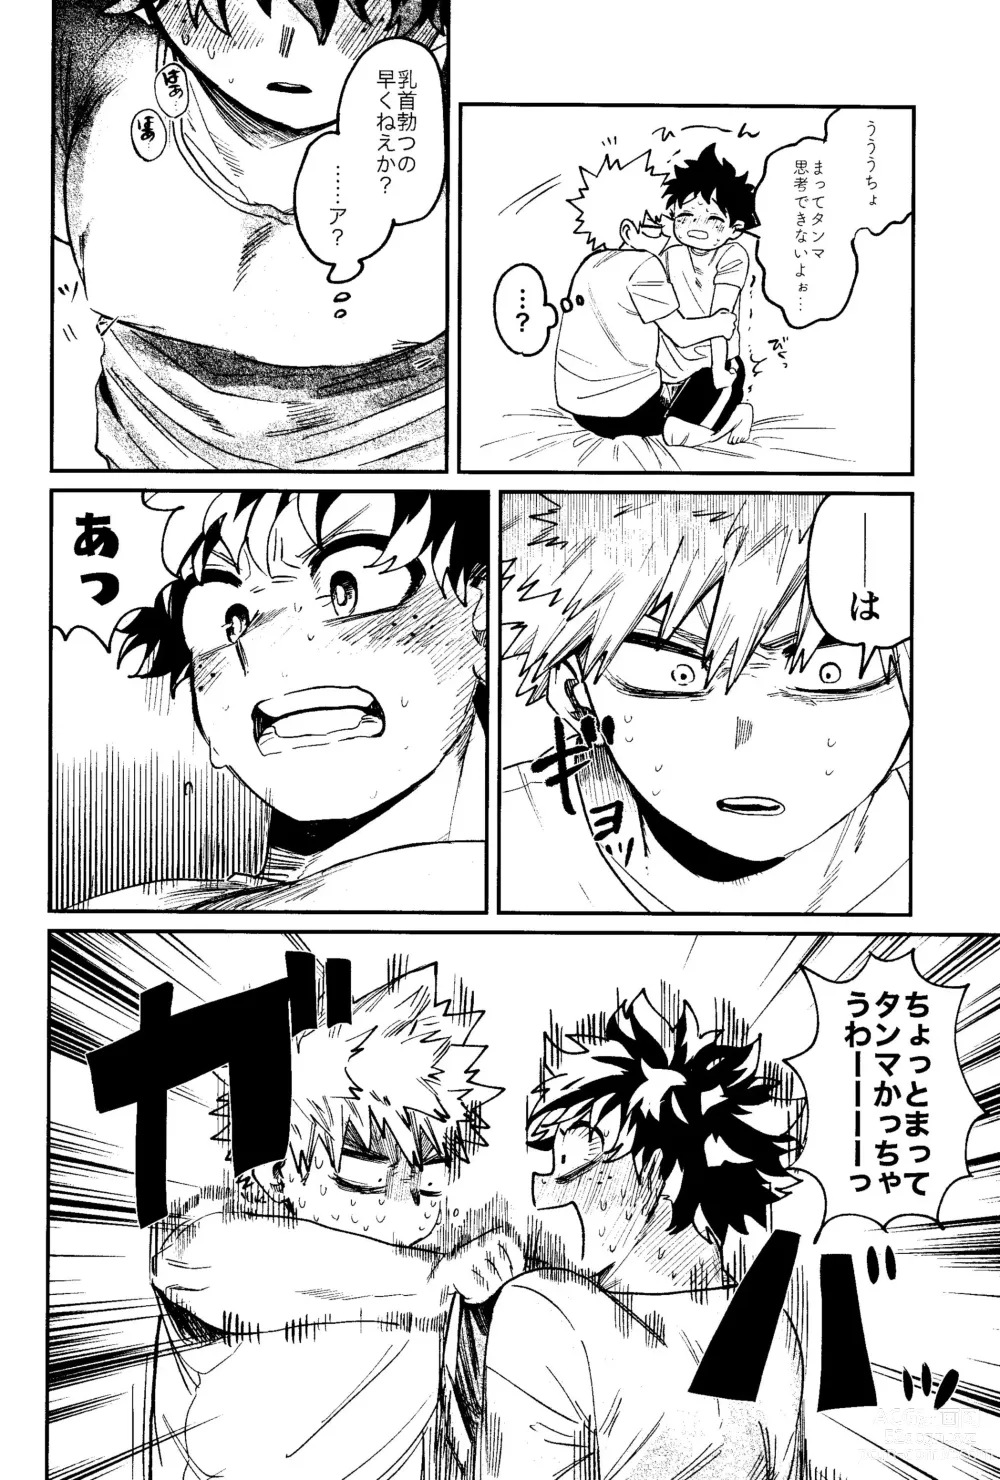 Page 25 of doujinshi HERO taru mono